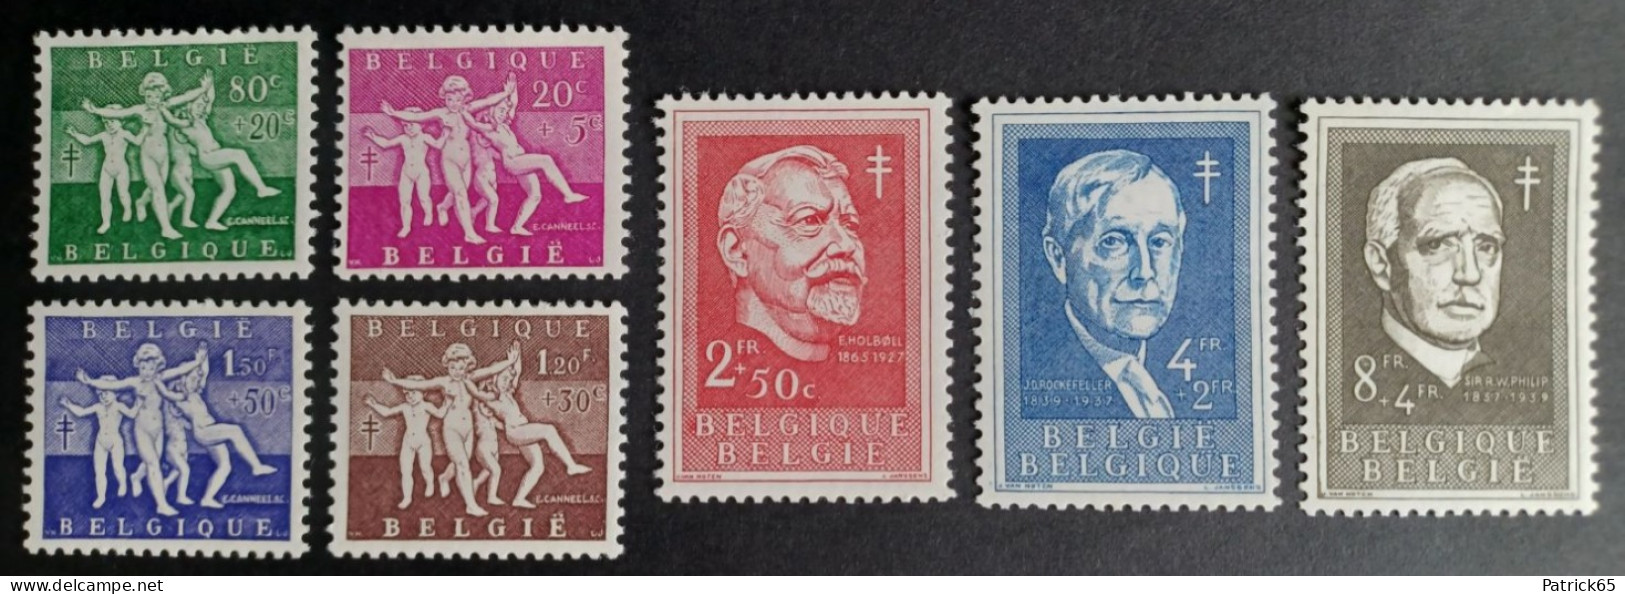 Belgie 1955 Antiteringzegels "Reeks Lentevreugde" Obp-979/985 MNH-Postfris - Ungebraucht